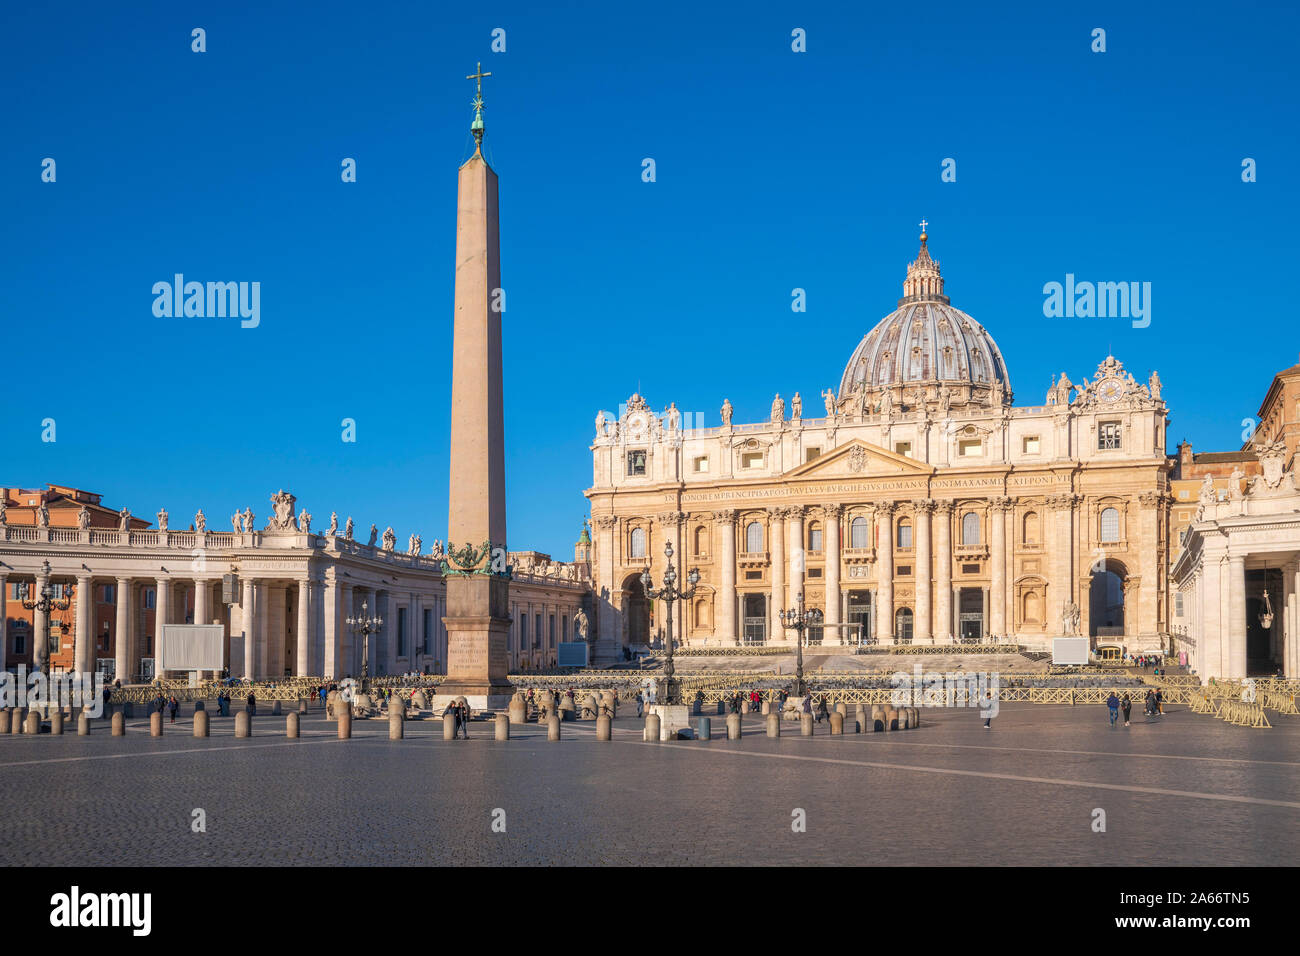 Italia, Lazio, Roma, el Vaticano, la Plaza de San Pedro, la Basílica de San Pedro. Foto de stock